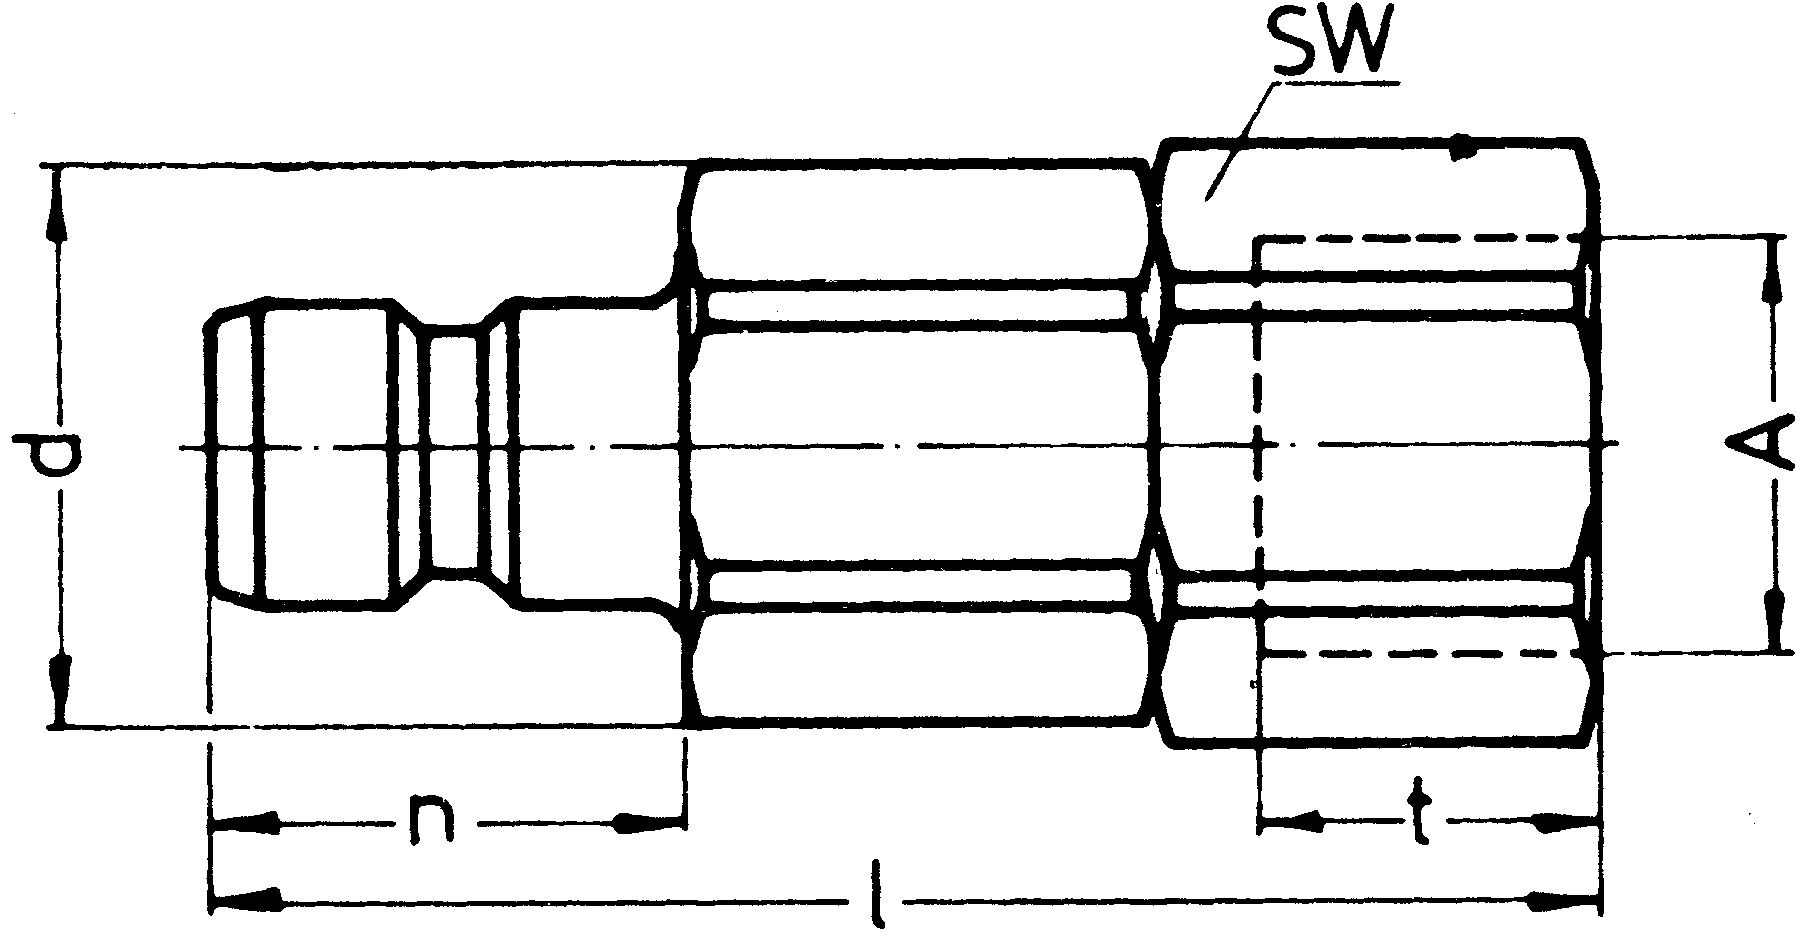 SP-009-2-WR521-11-4-Z02-EB